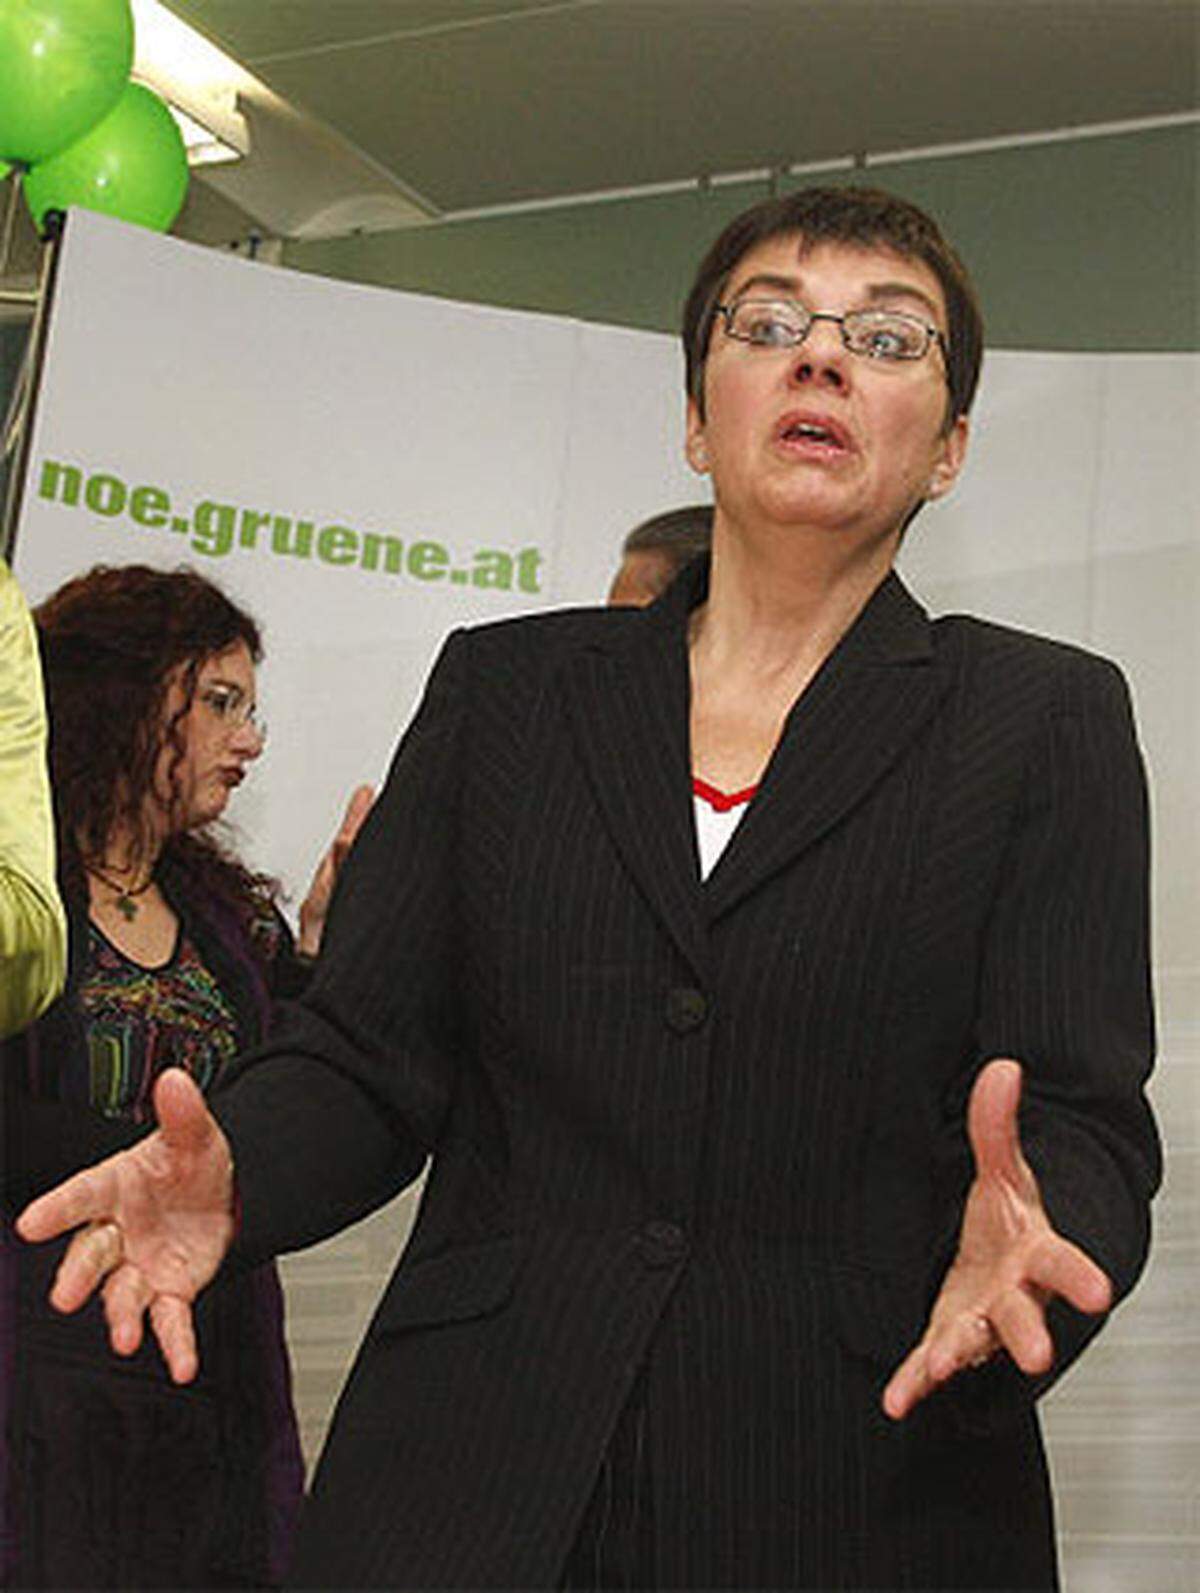 Allein bei den Grünen herrschte etwas Ratlosigkeit. Man hatte das Ergebnis zwar gehalten, war aber weit von der FPÖ überholt worden. Spitzenkandidatin Madeleine Petrovic süffisant: "Wir sind mit einem grünen Auge davongekommen."